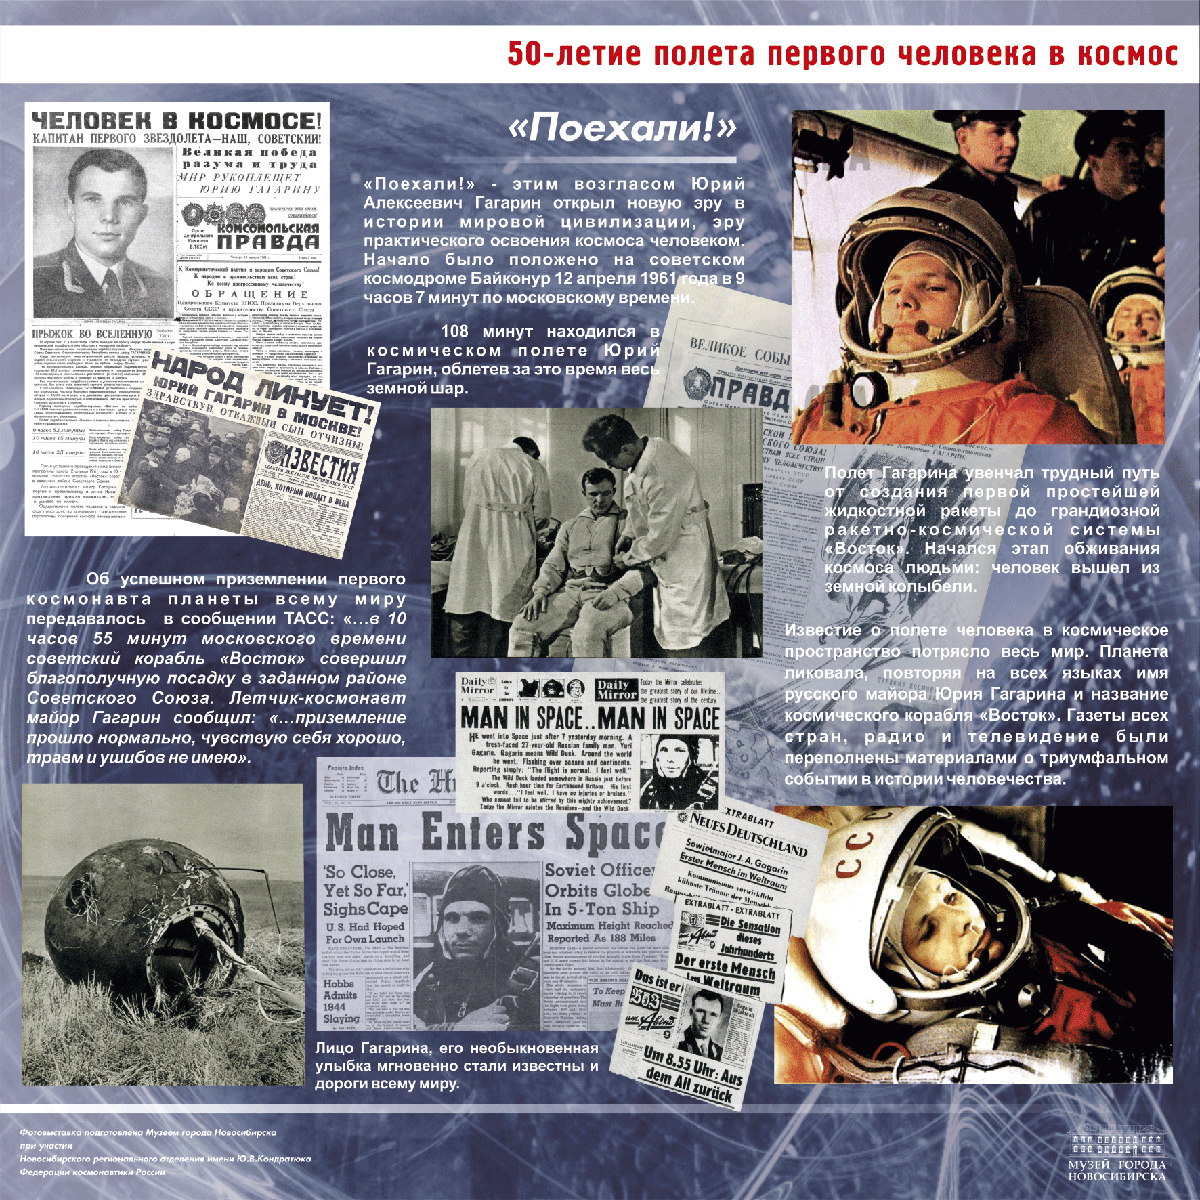 Юбилей первого полета в космос. 1961 Первый полет человека в космос. Полет Гагарина в космос 12 апреля 1961. 60 Летие полета Гагарина в космос.